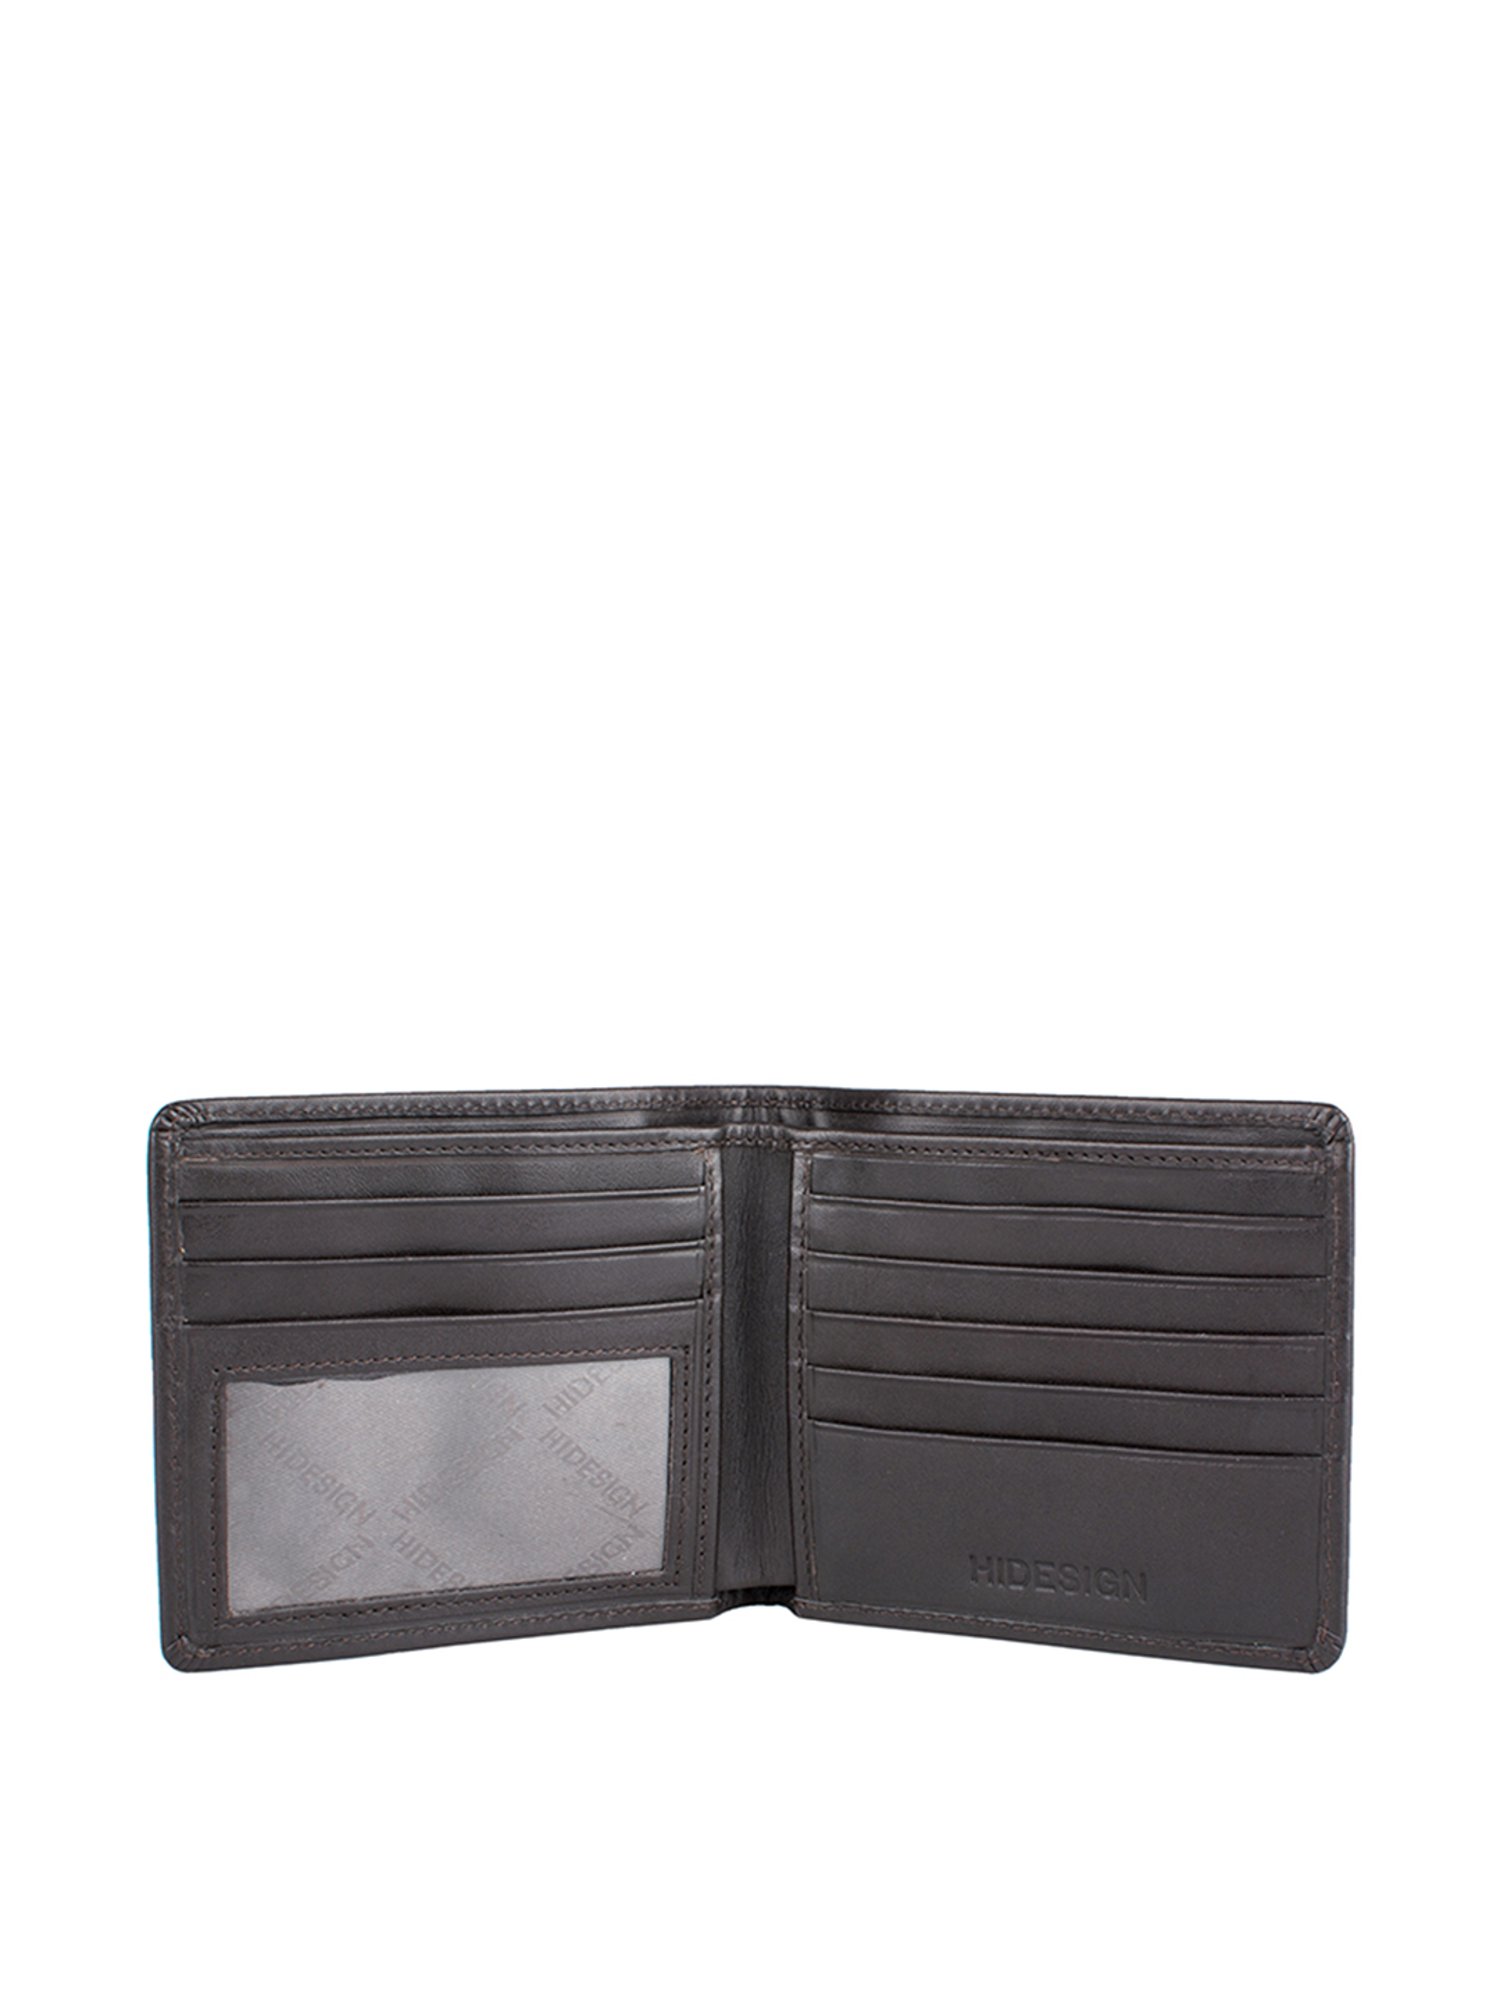 Buy Brown 286-010F Bi-Fold Wallet Online - Hidesign